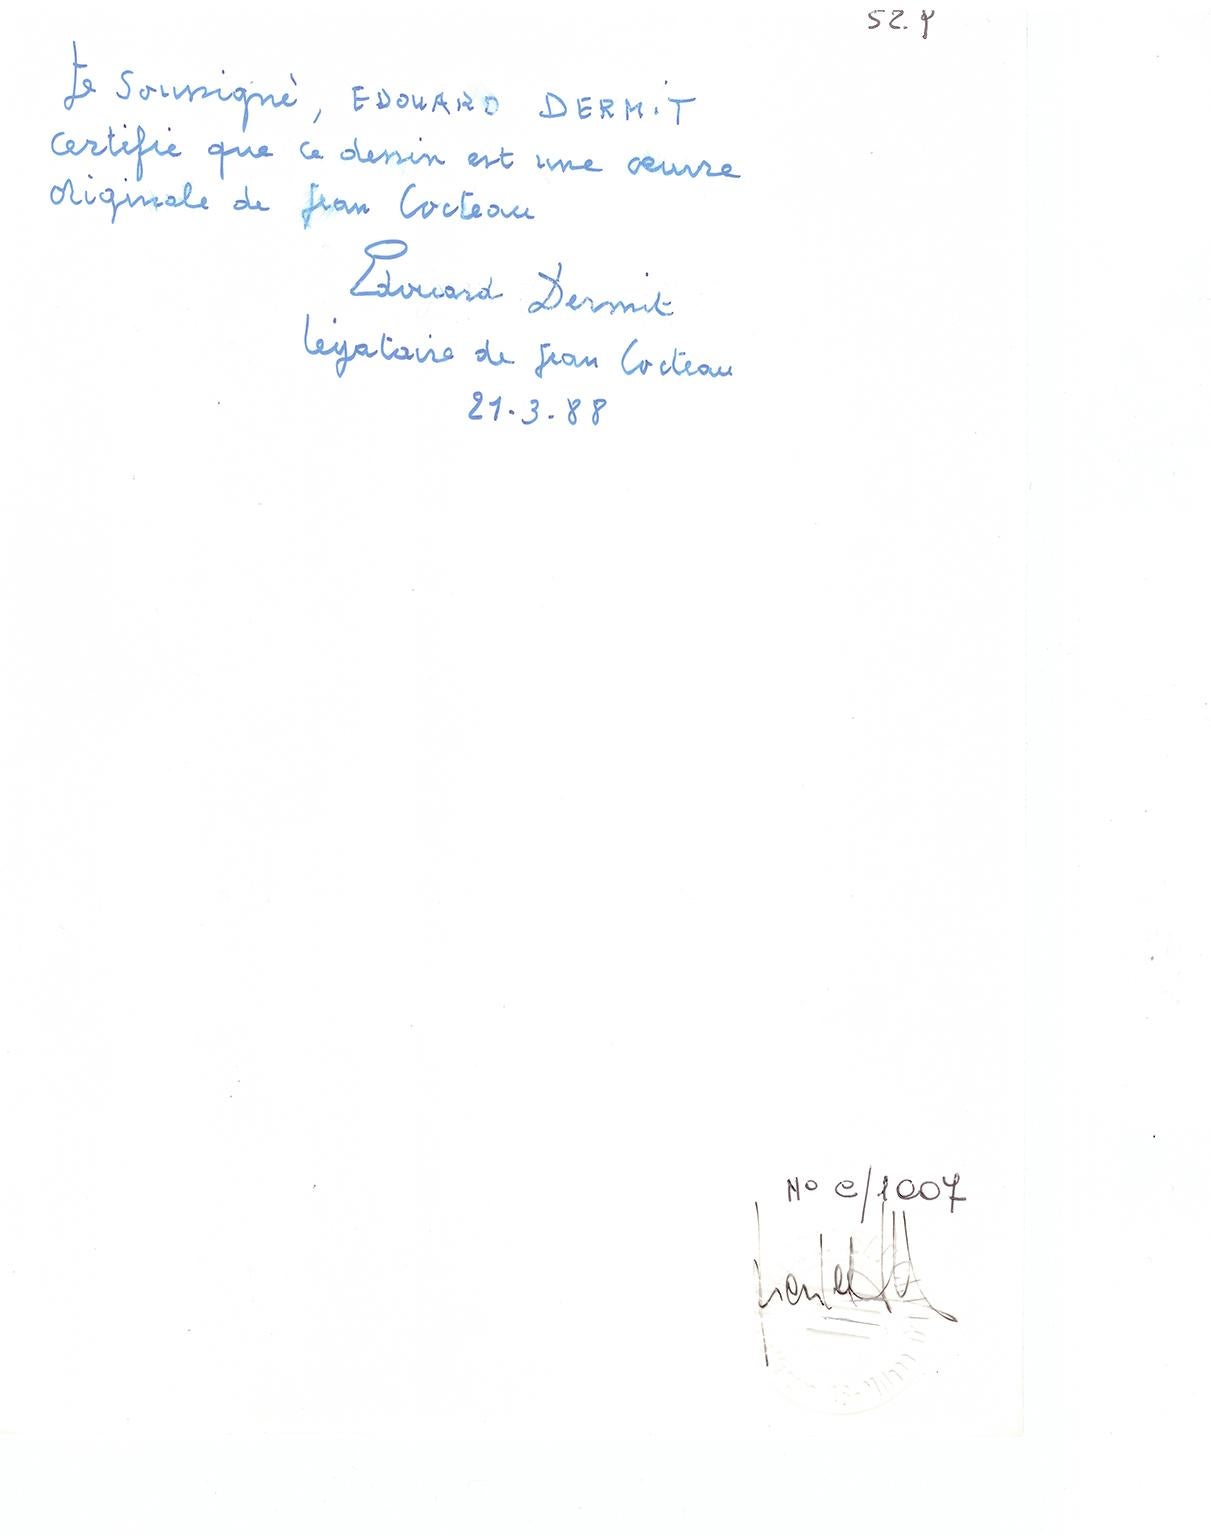 dessin original de Jean Cocteau  de la collection Edouard DERMIT . 
signé et daté 1957 . encadré .